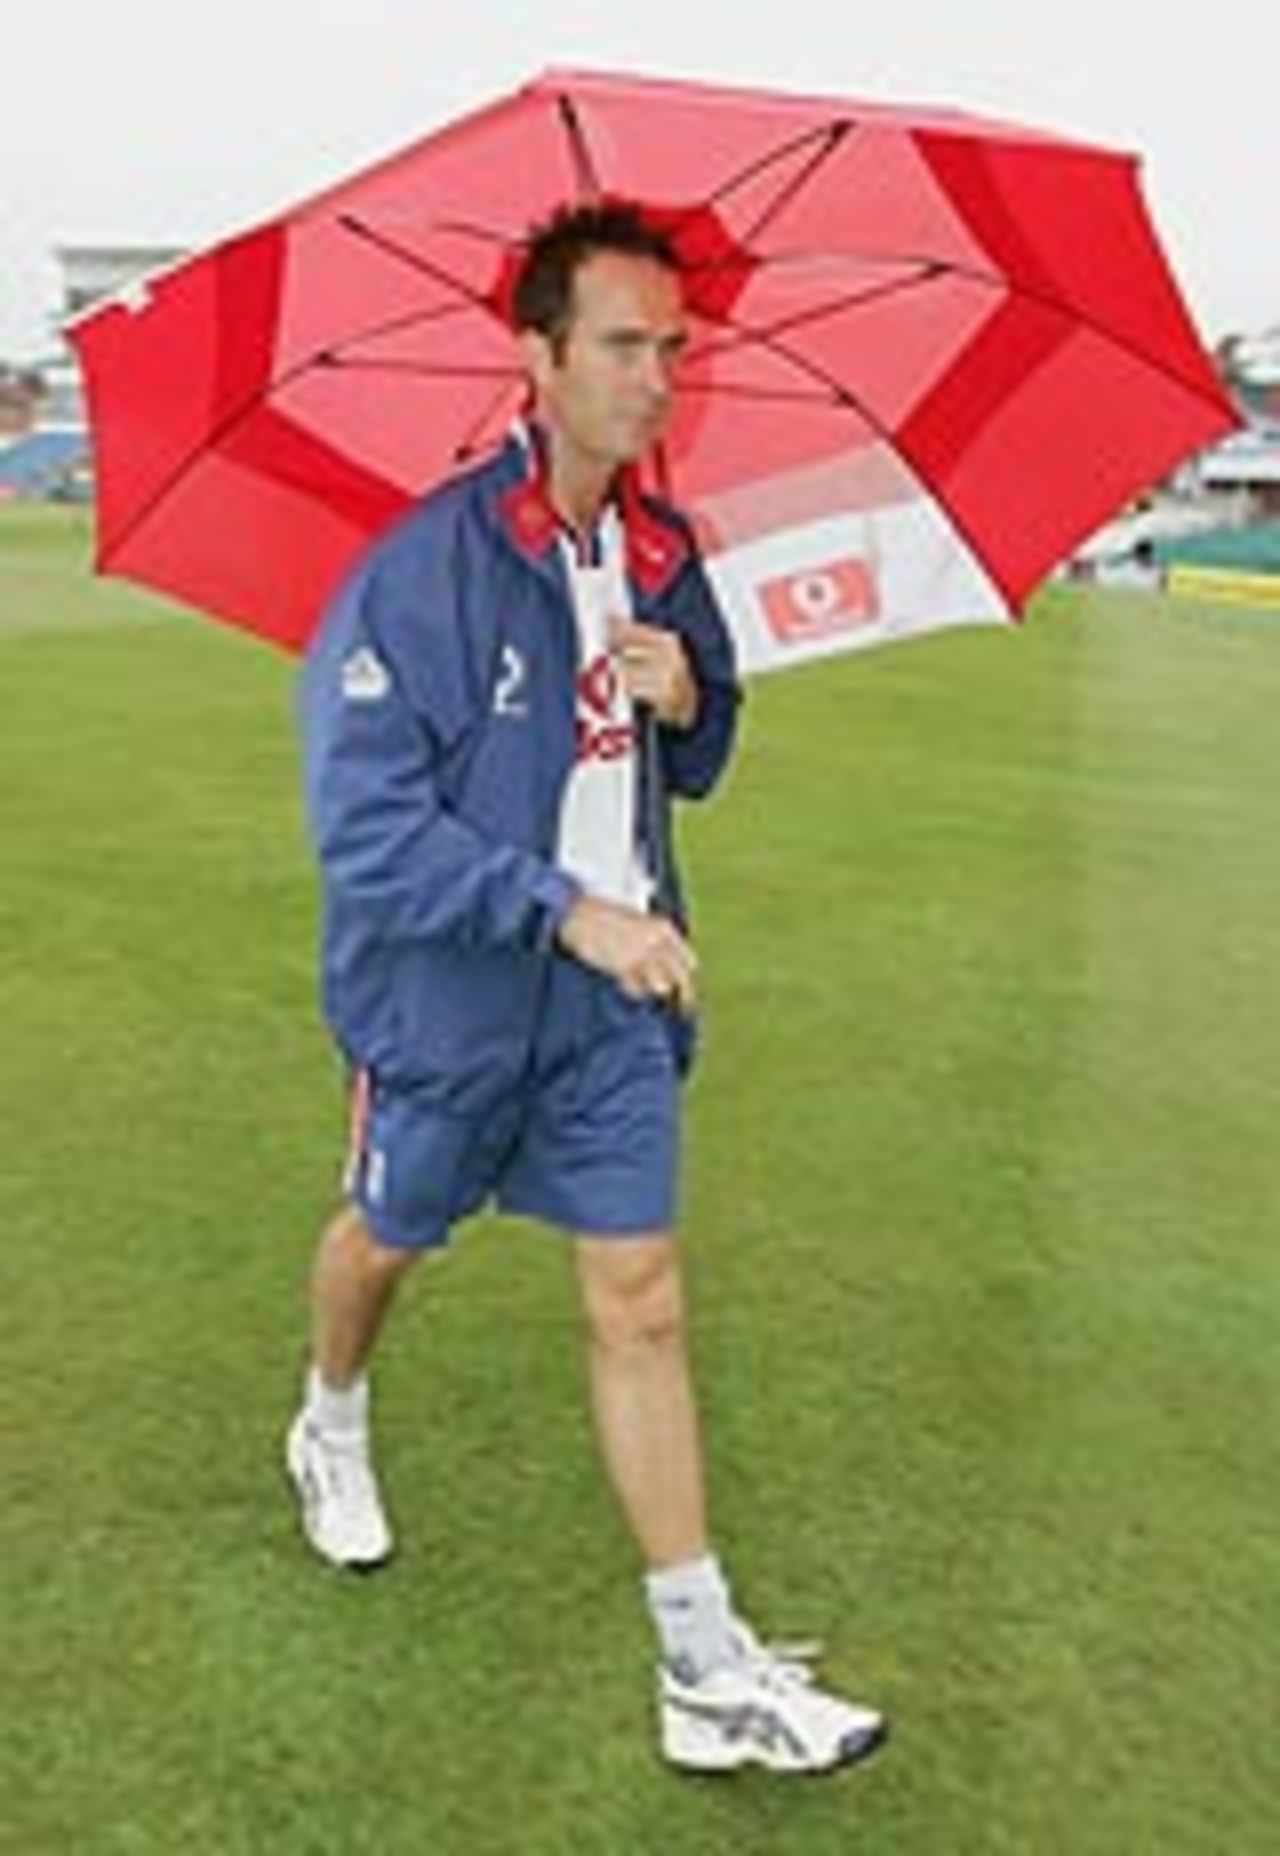 Michael Vaughan in the rain